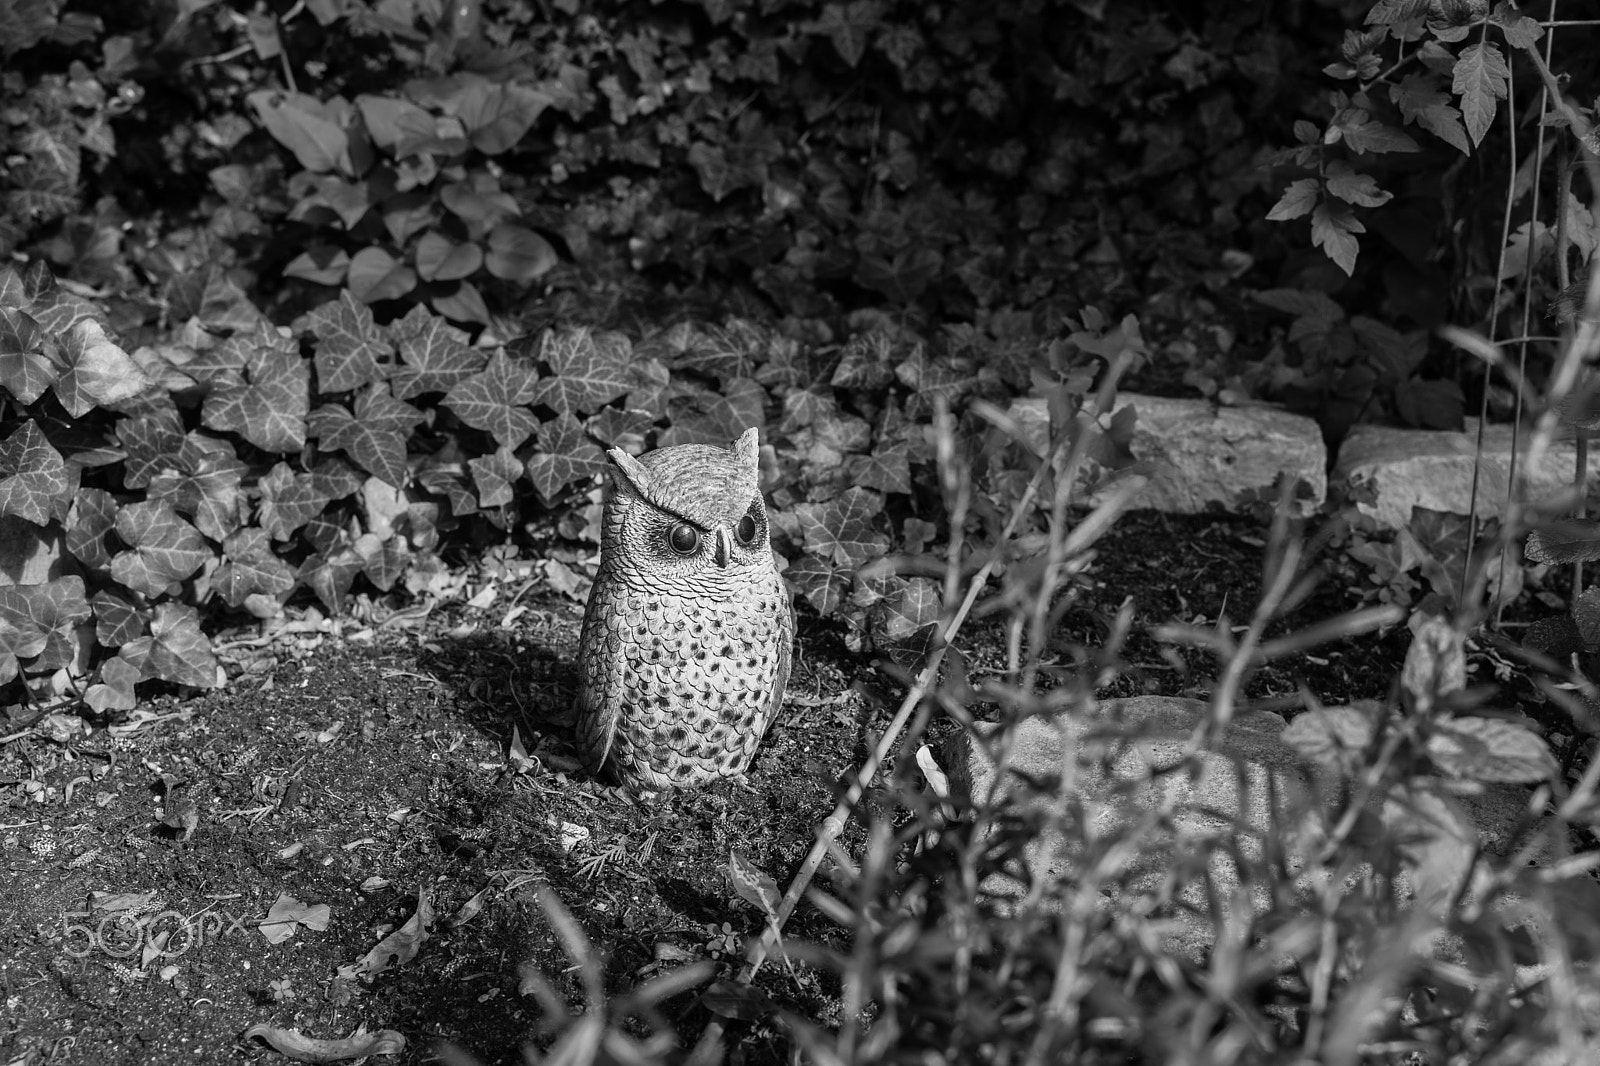 Sony a7 + E 35mm F2 sample photo. An owl photography